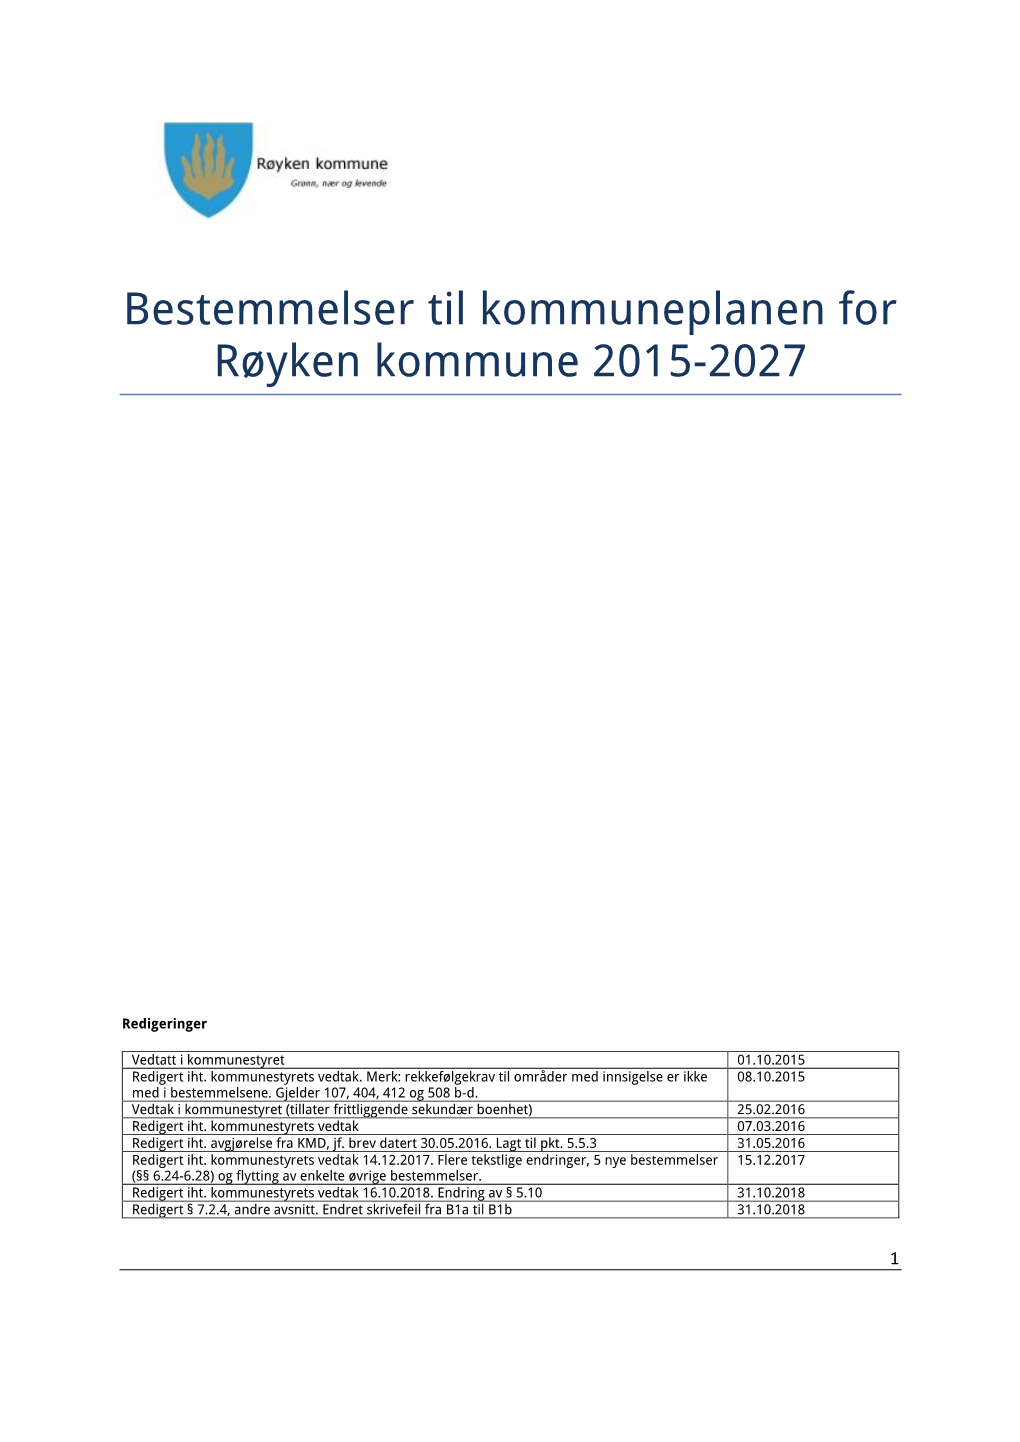 Bestemmelser Til Kommuneplanen for Røyken Kommune 2015-2027